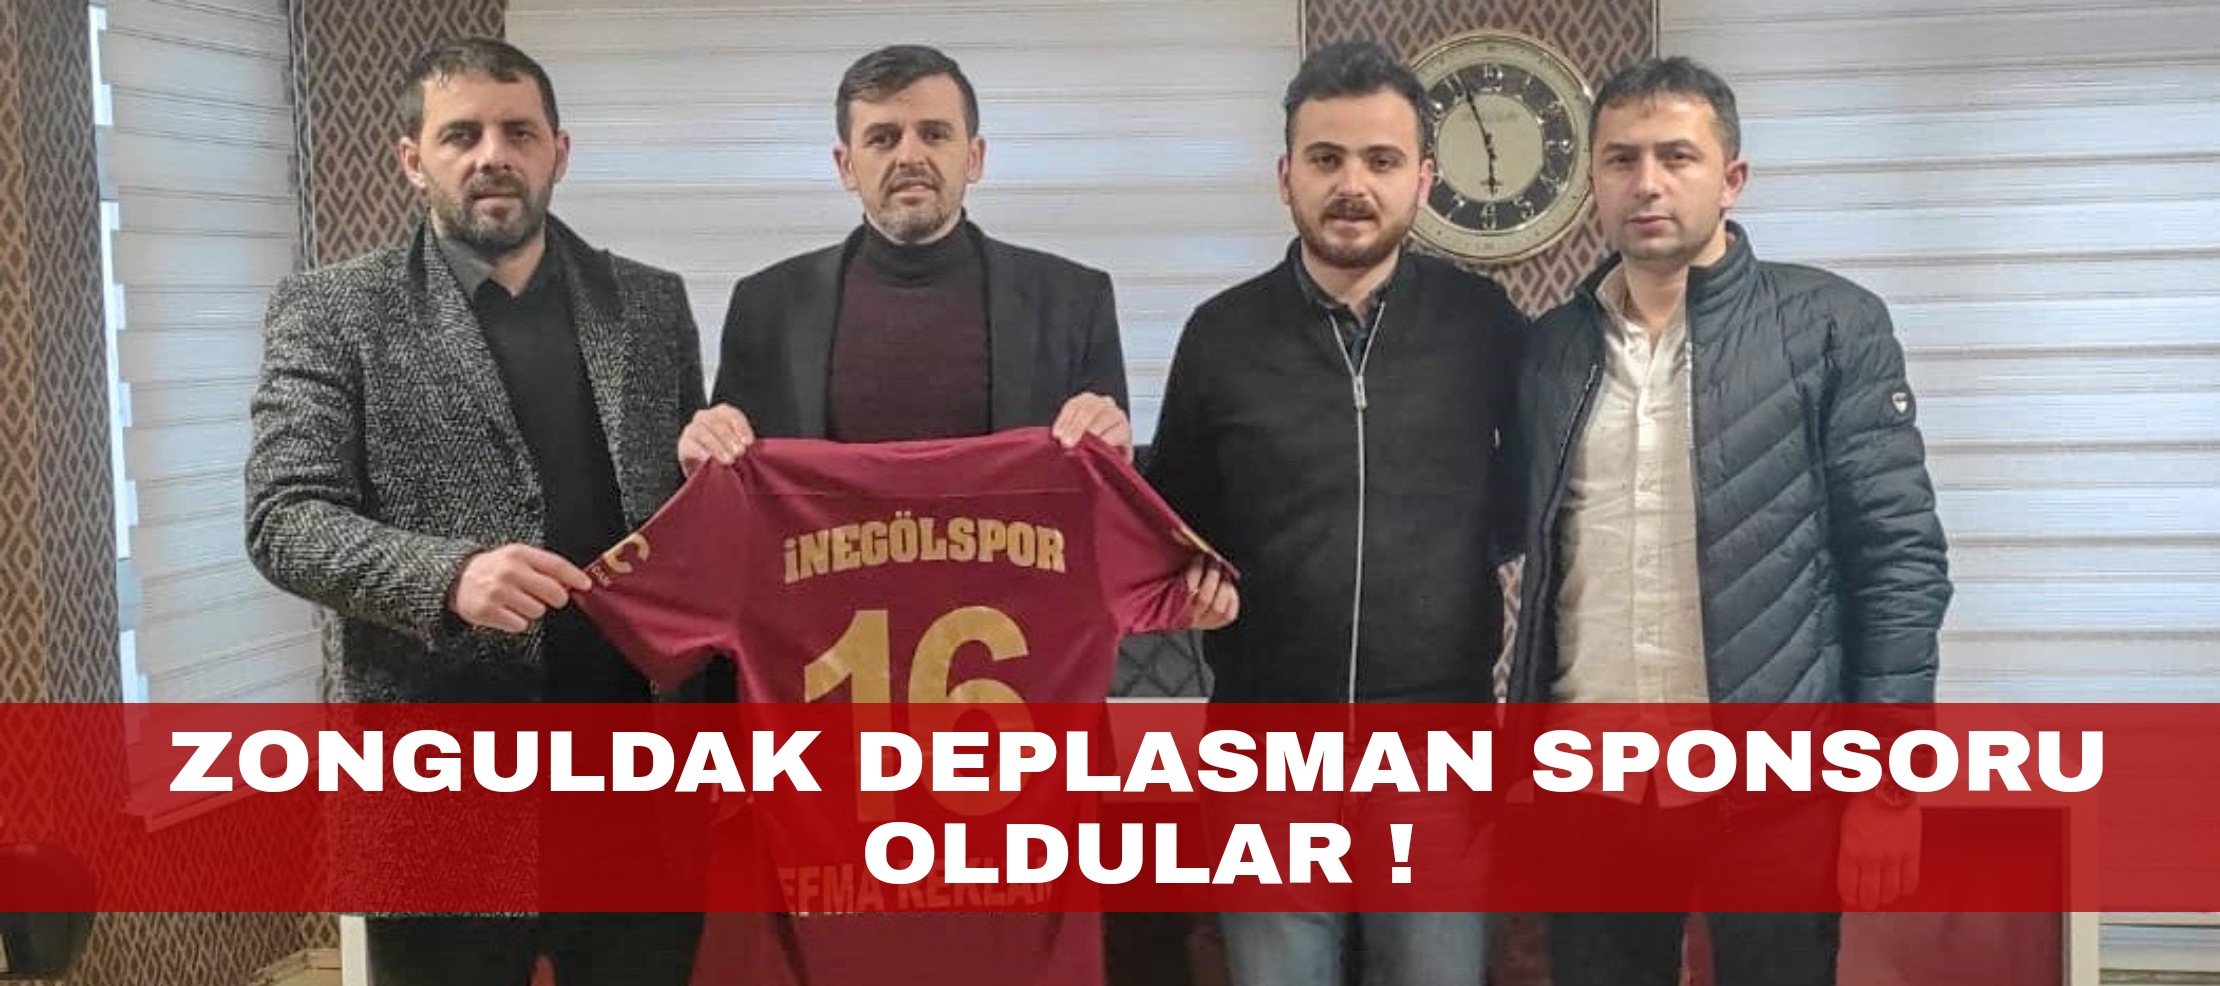 Ef-Ma reklam Zonguldak deplasman sponsoru oldu !